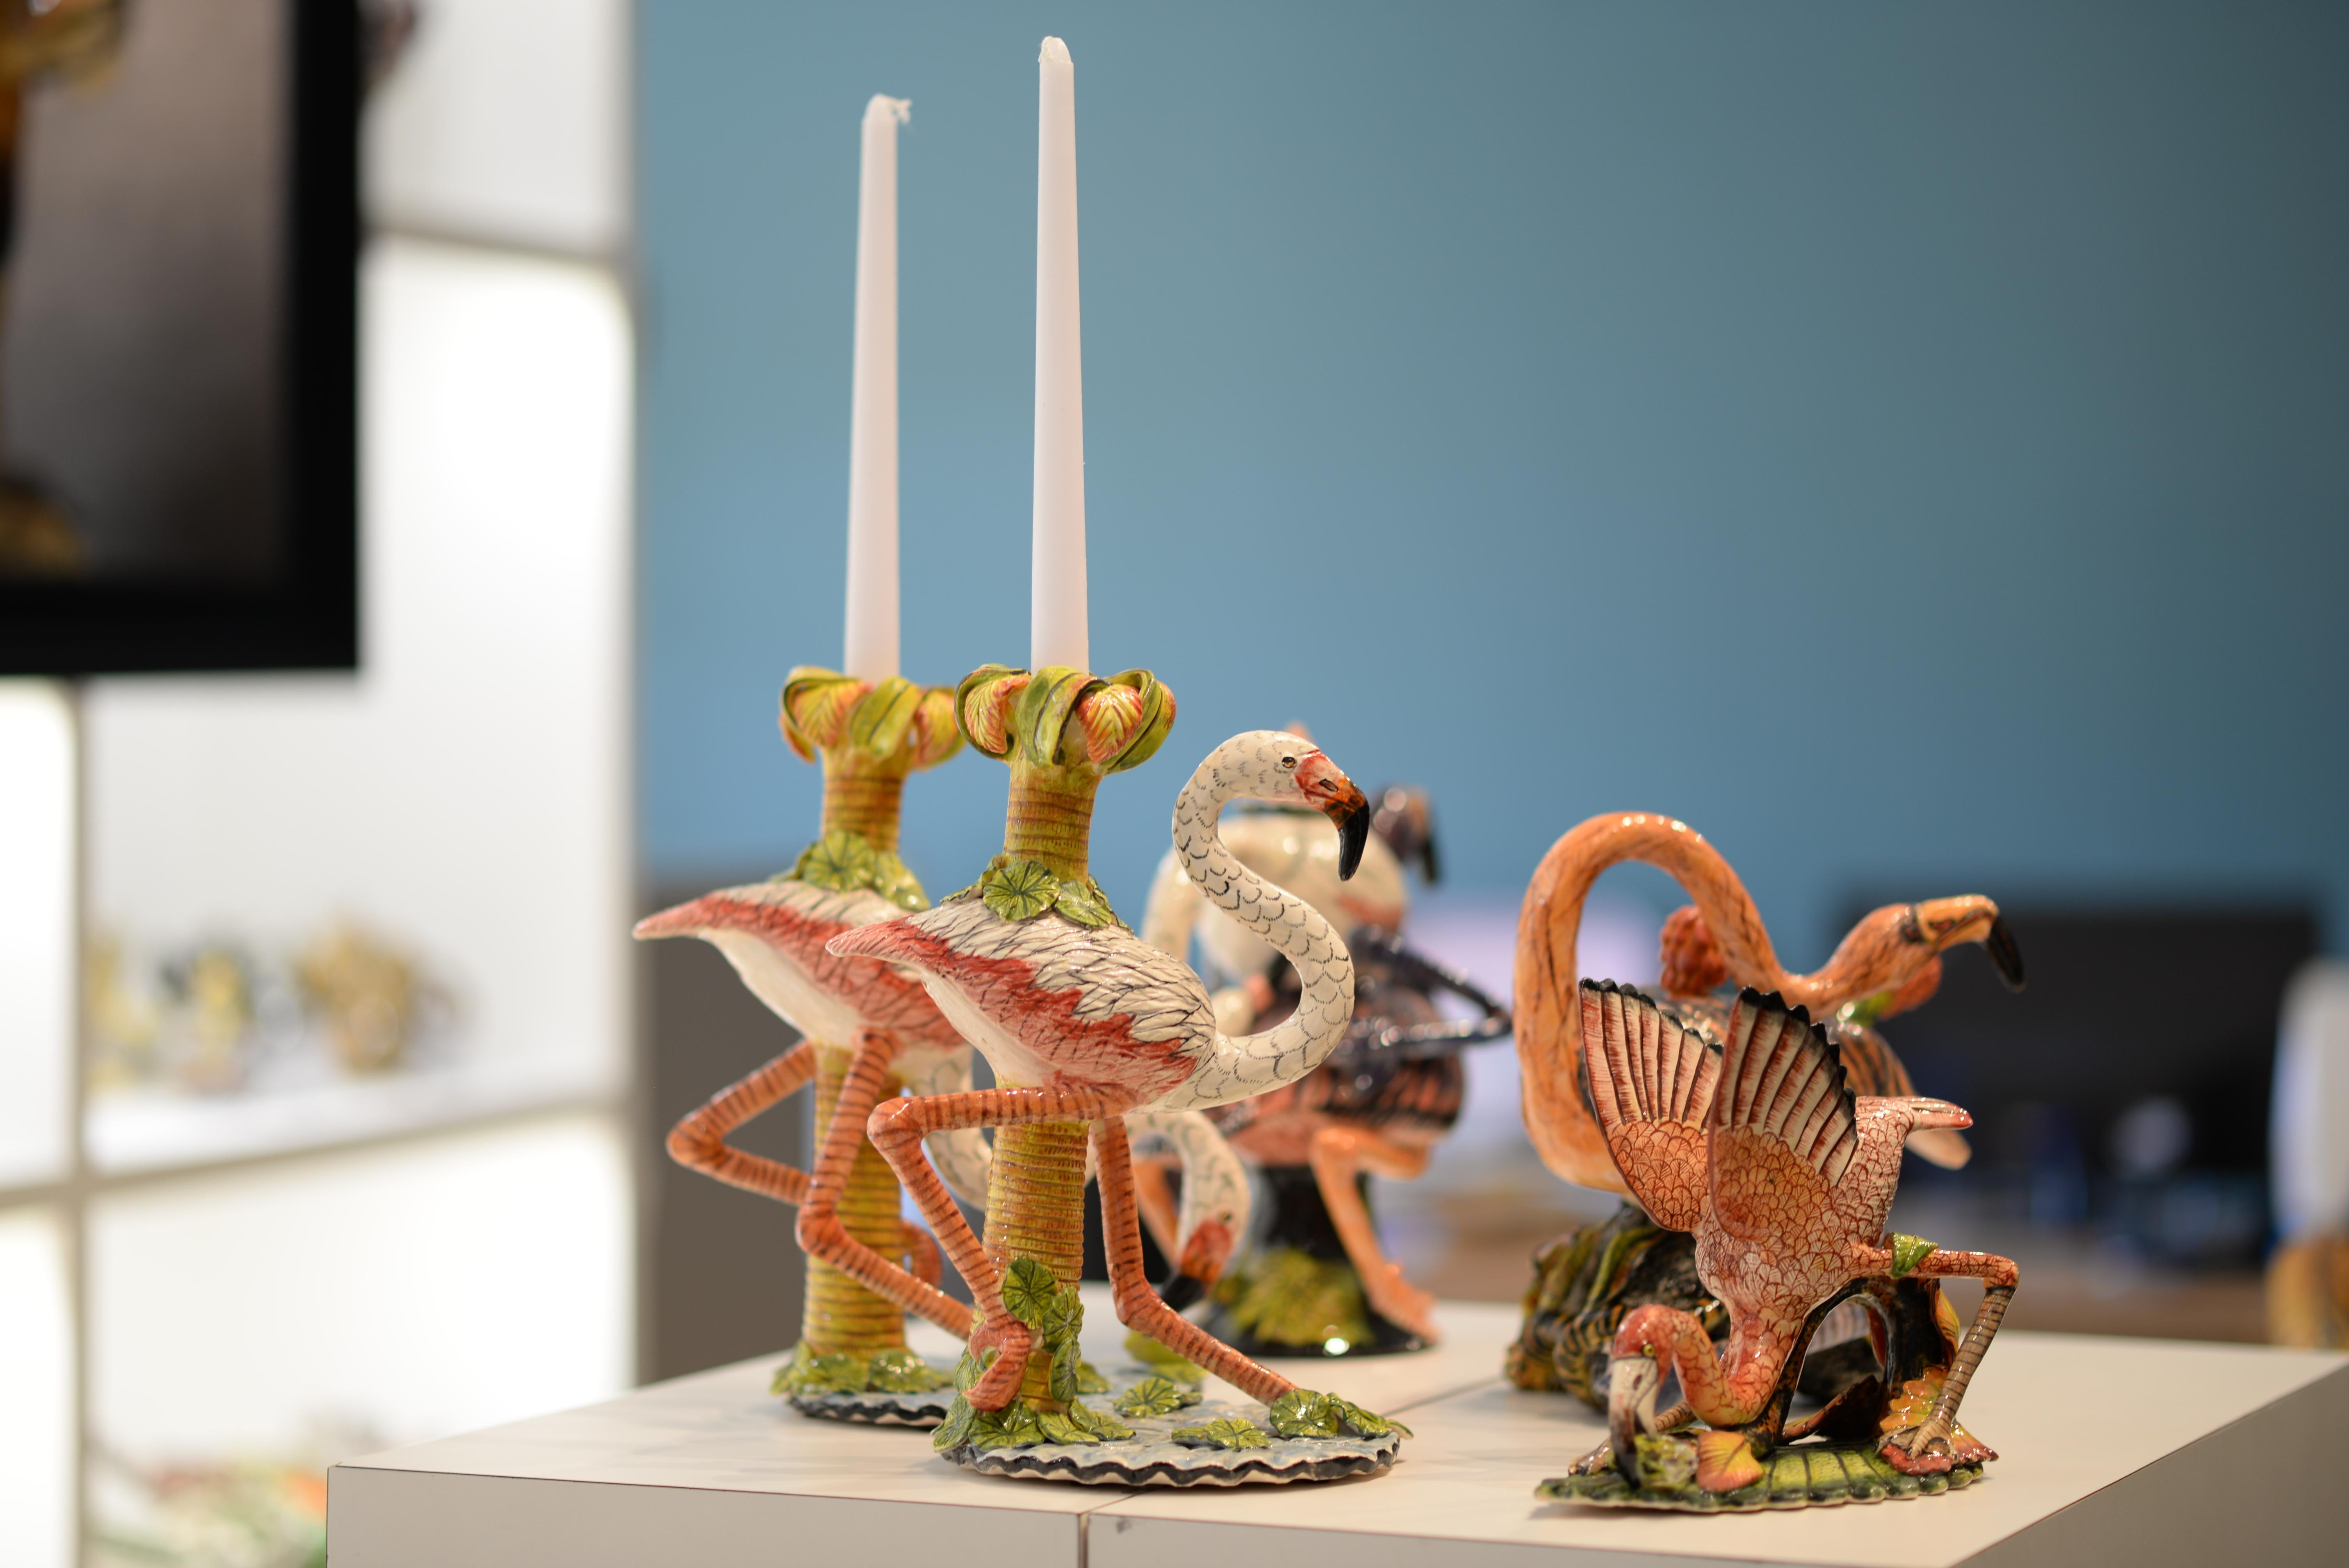 Contemporary Unique Ceramic Flamingo Candlesticks made in South Africa